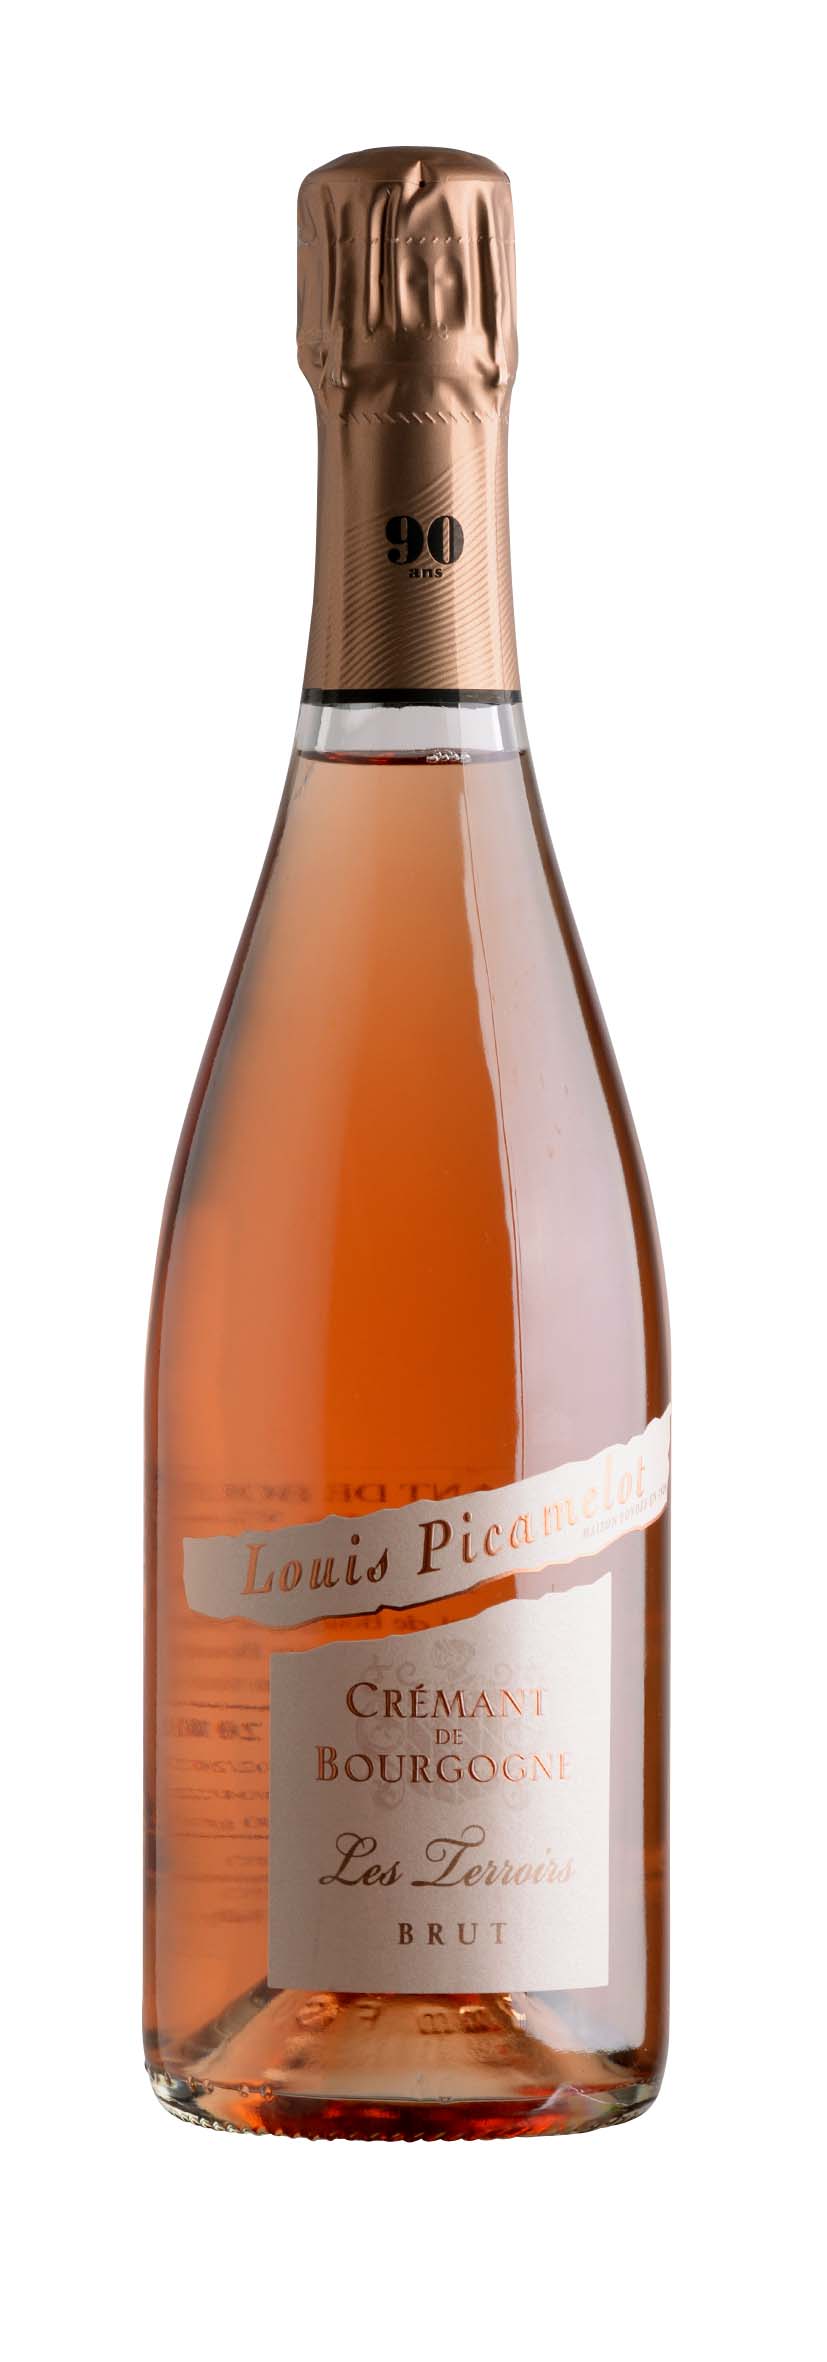 Crémant de Bourgogne AOC Les Terroirs Rosé Brut 2014